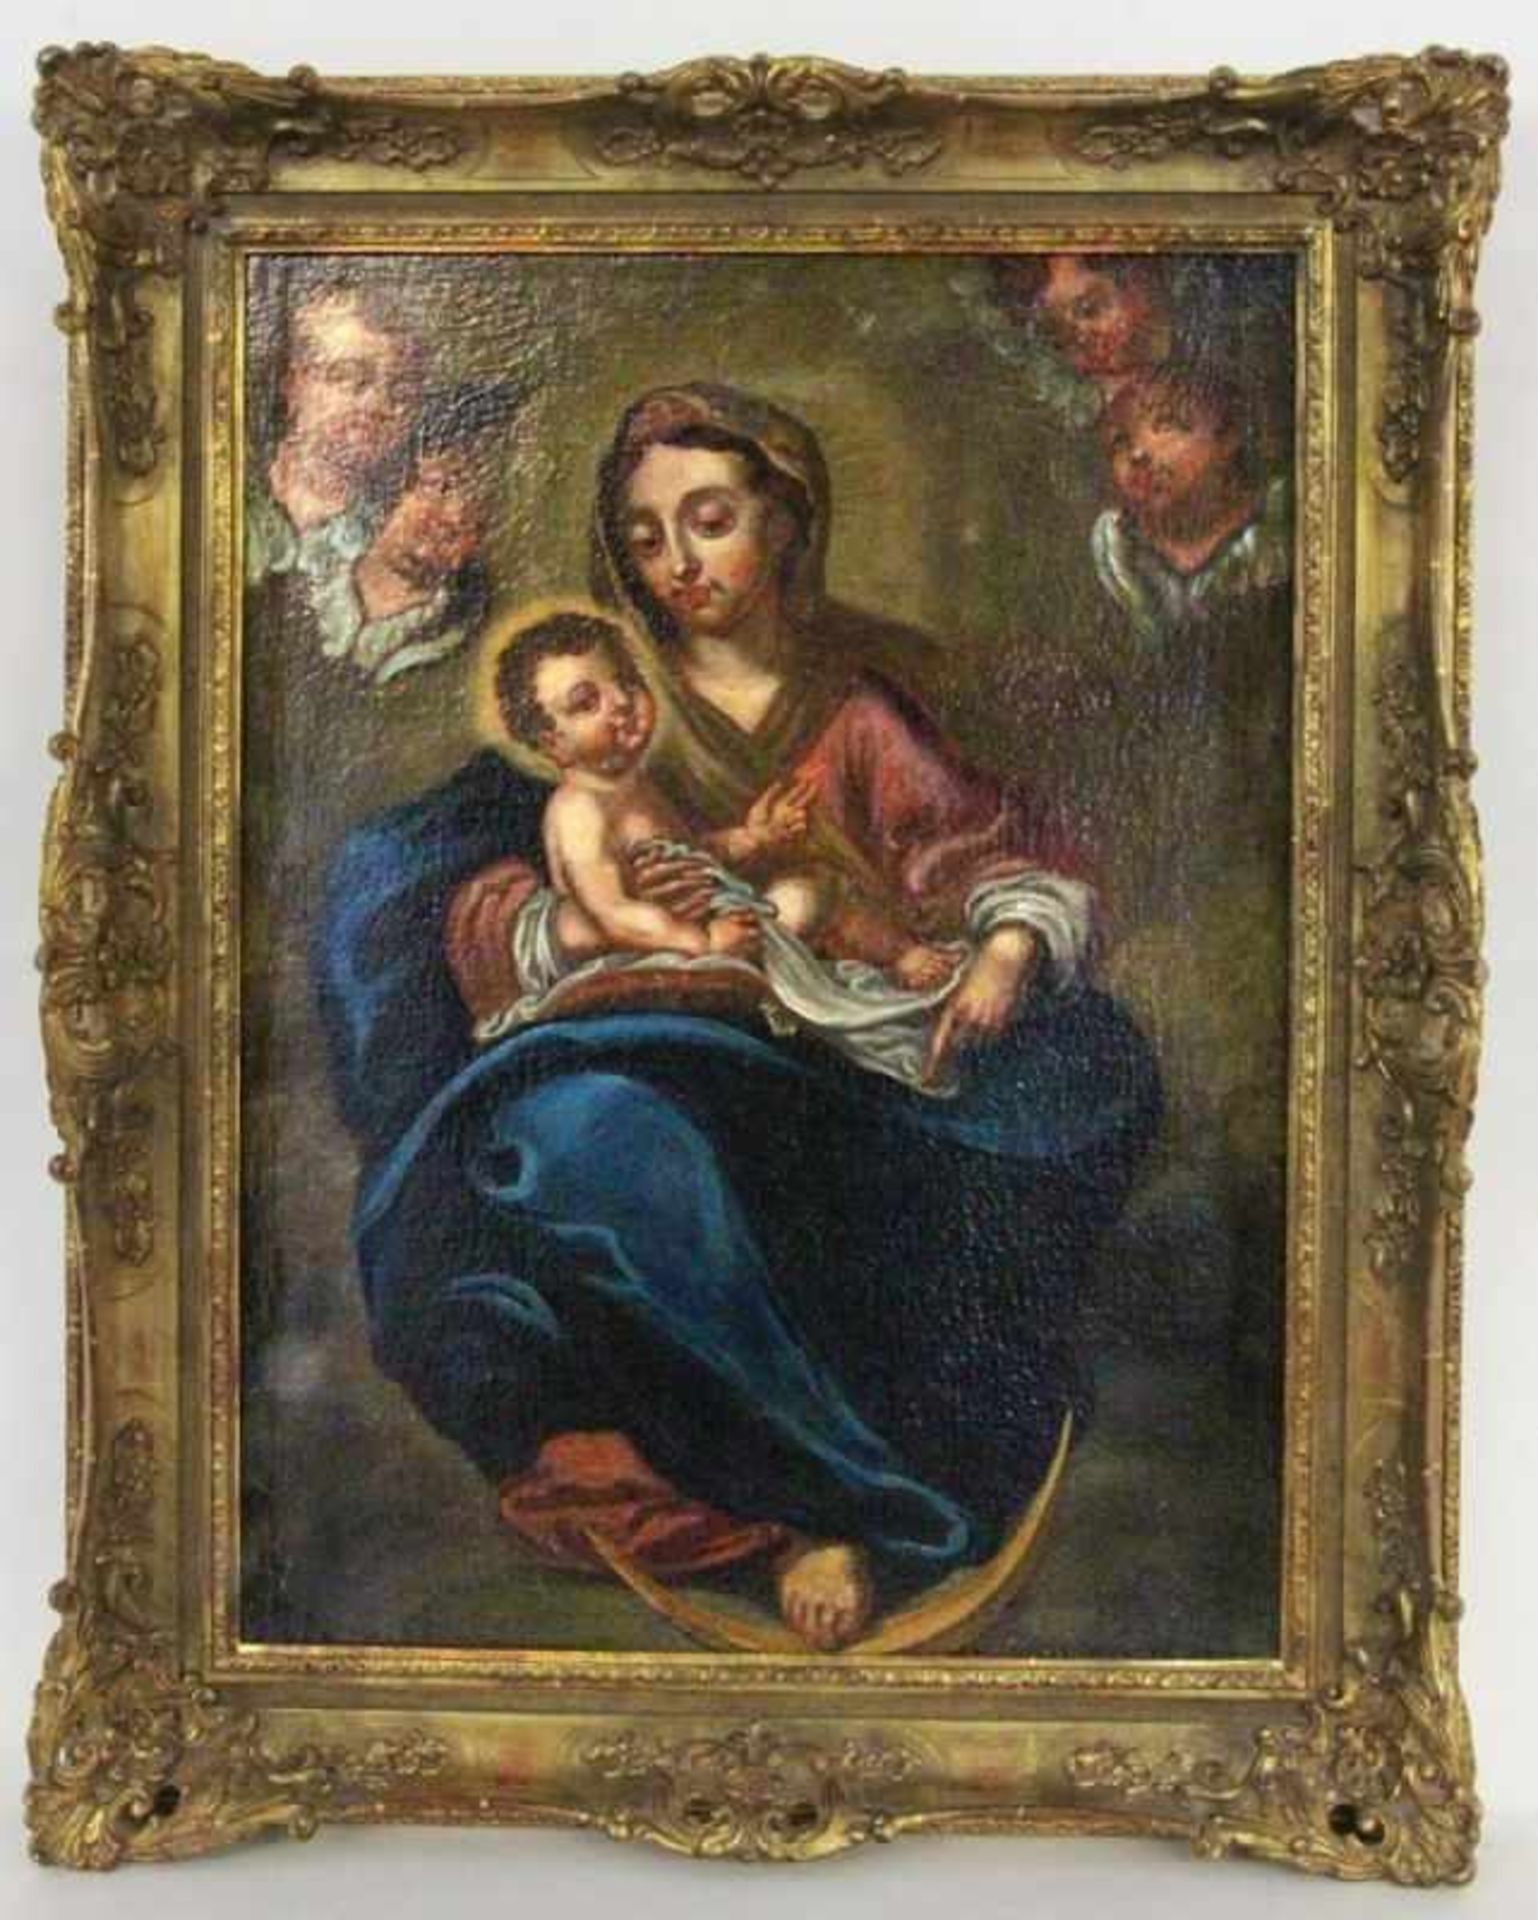 BAROCKMALER 17./18.Jh. Madonna mit Kind, umgeben von Engeln. Öl/Lwd., 85x62cm, Ra. Rest. und auf